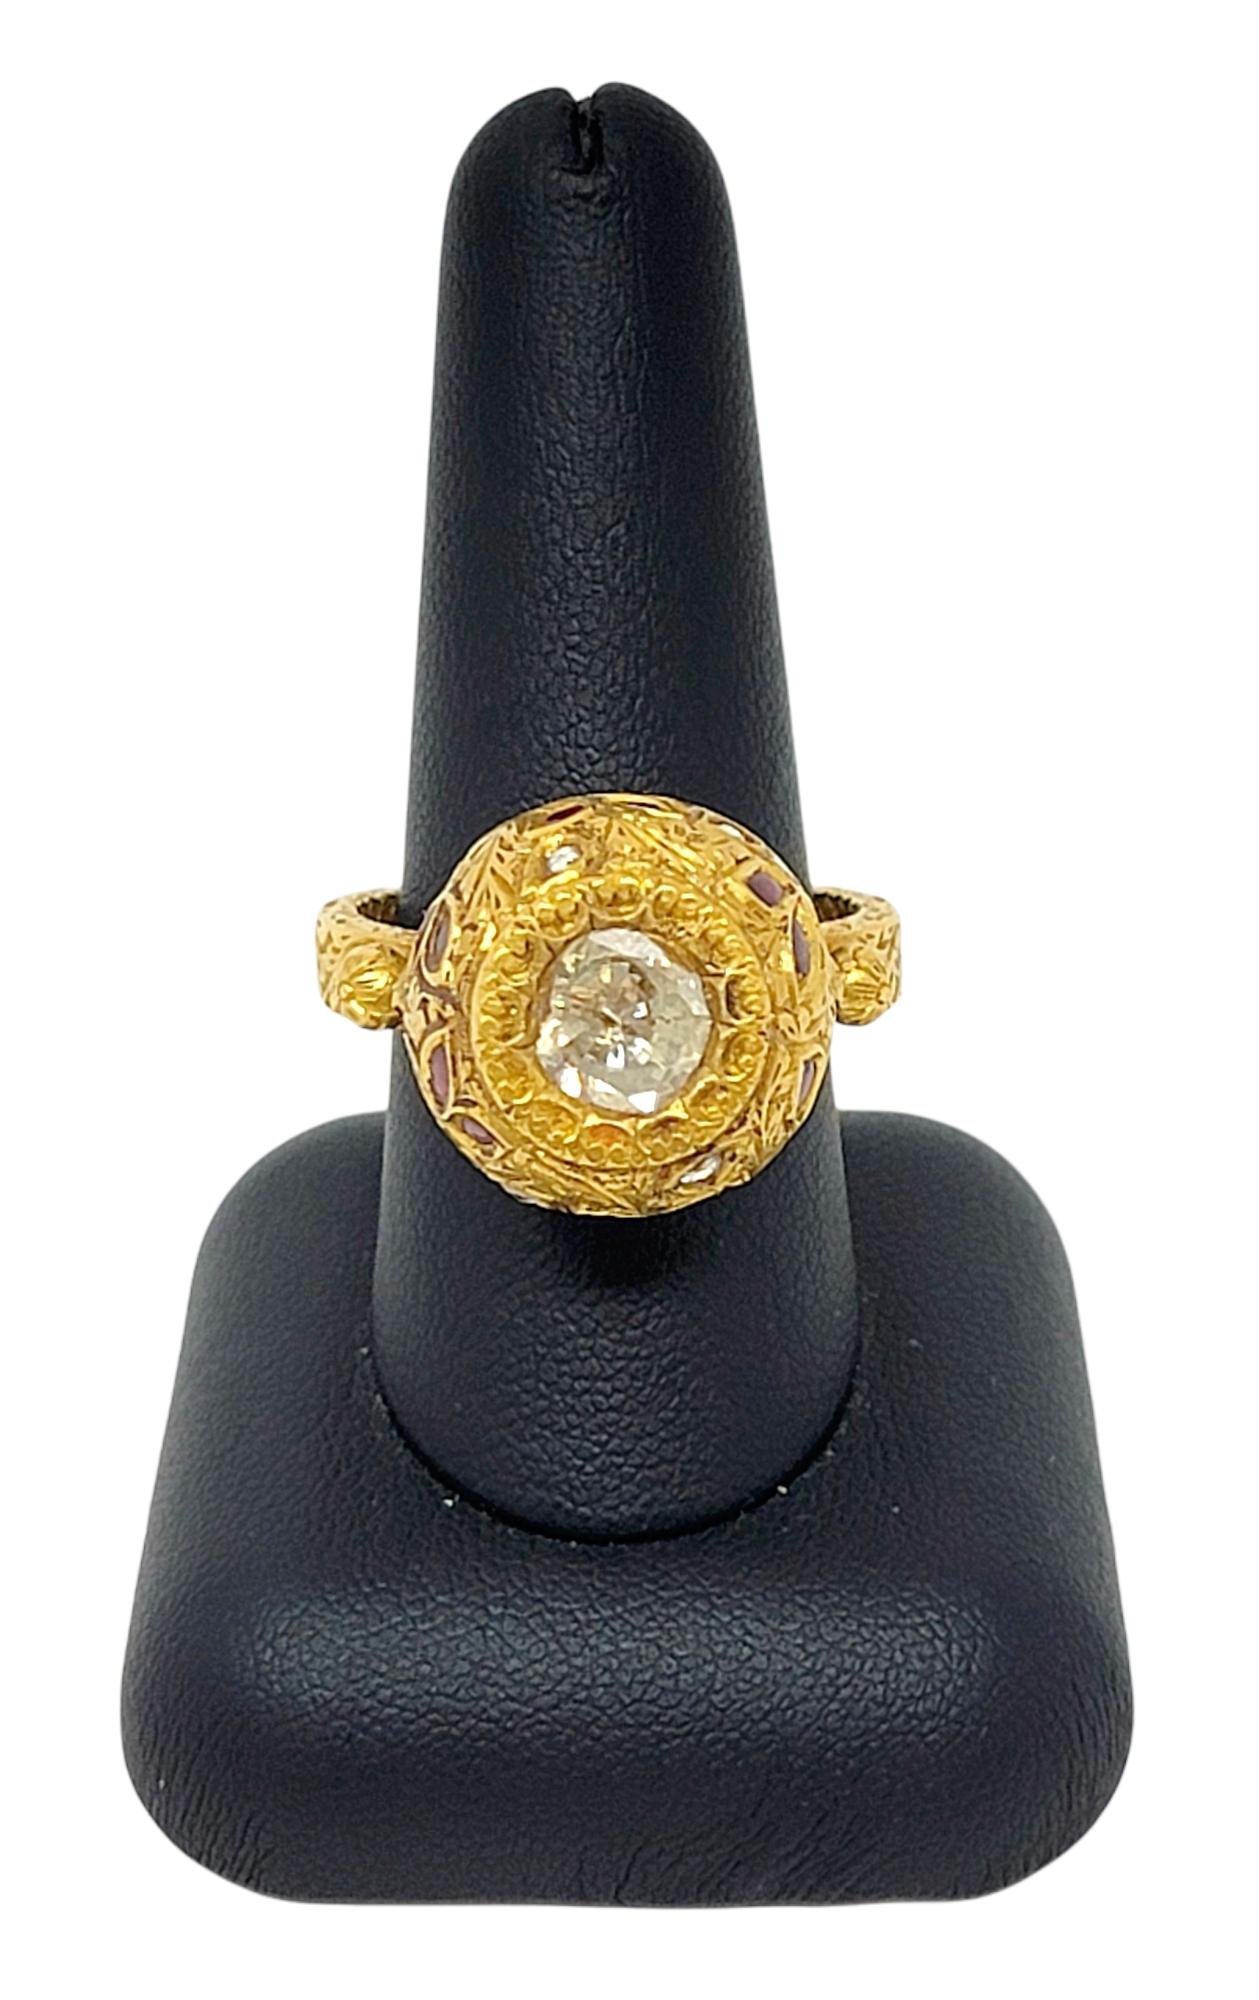 1.52 Carat Total Polki and Rose Cut Diamond Ring 21 Karat Yellow Gold Ornate For Sale 3